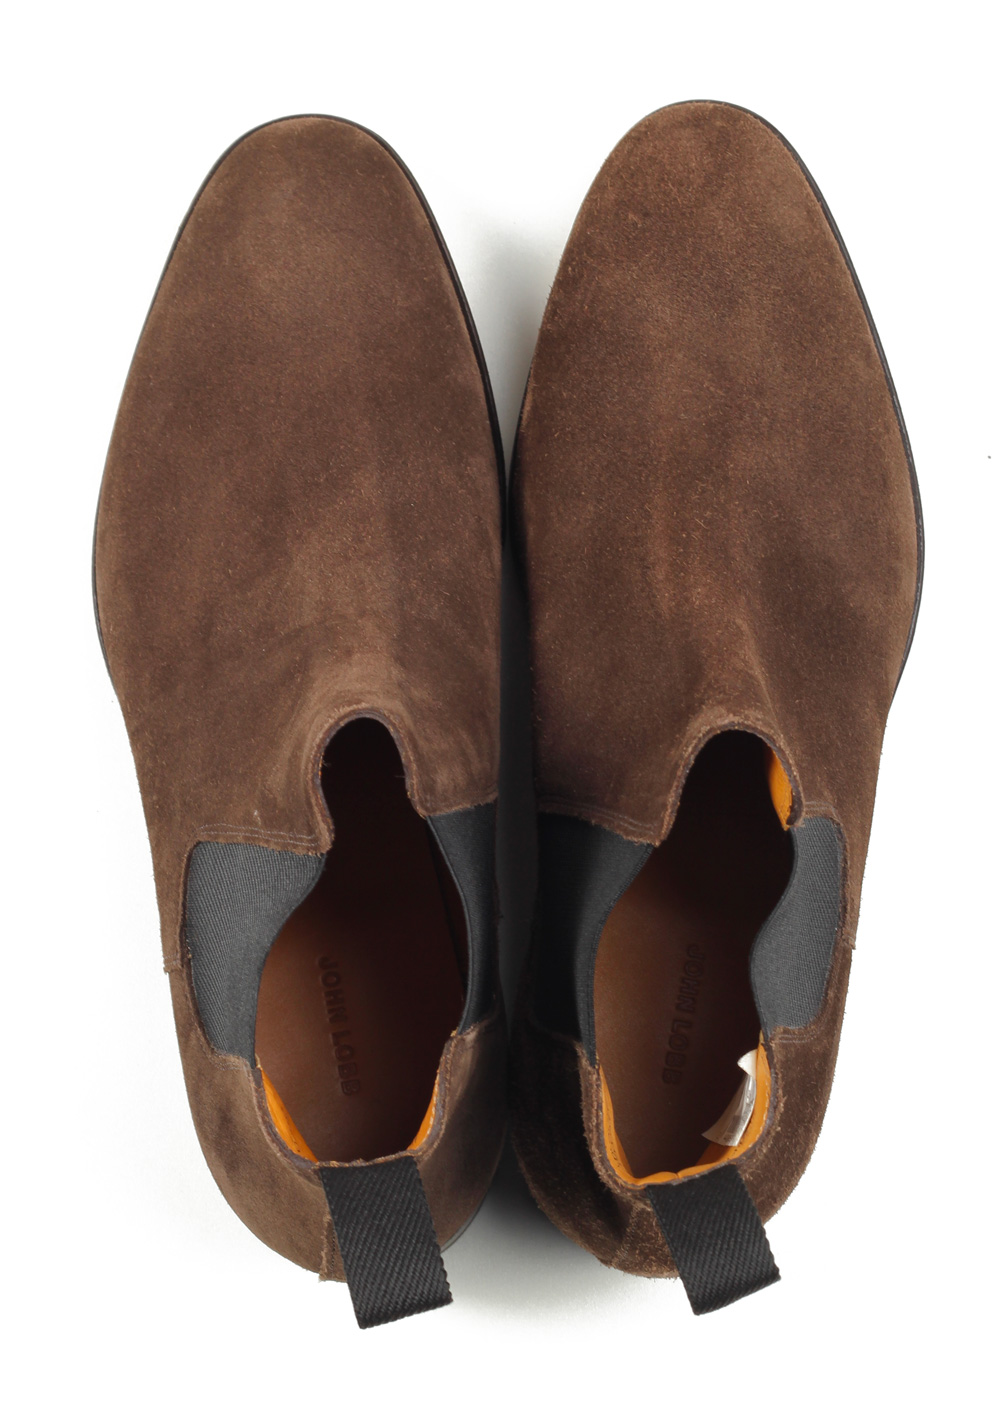 John Lobb Lawry Brown Chelsea Boot Shoes Size 7,5 UK / 8,5 U.S. On 8695 Last | Costume Limité